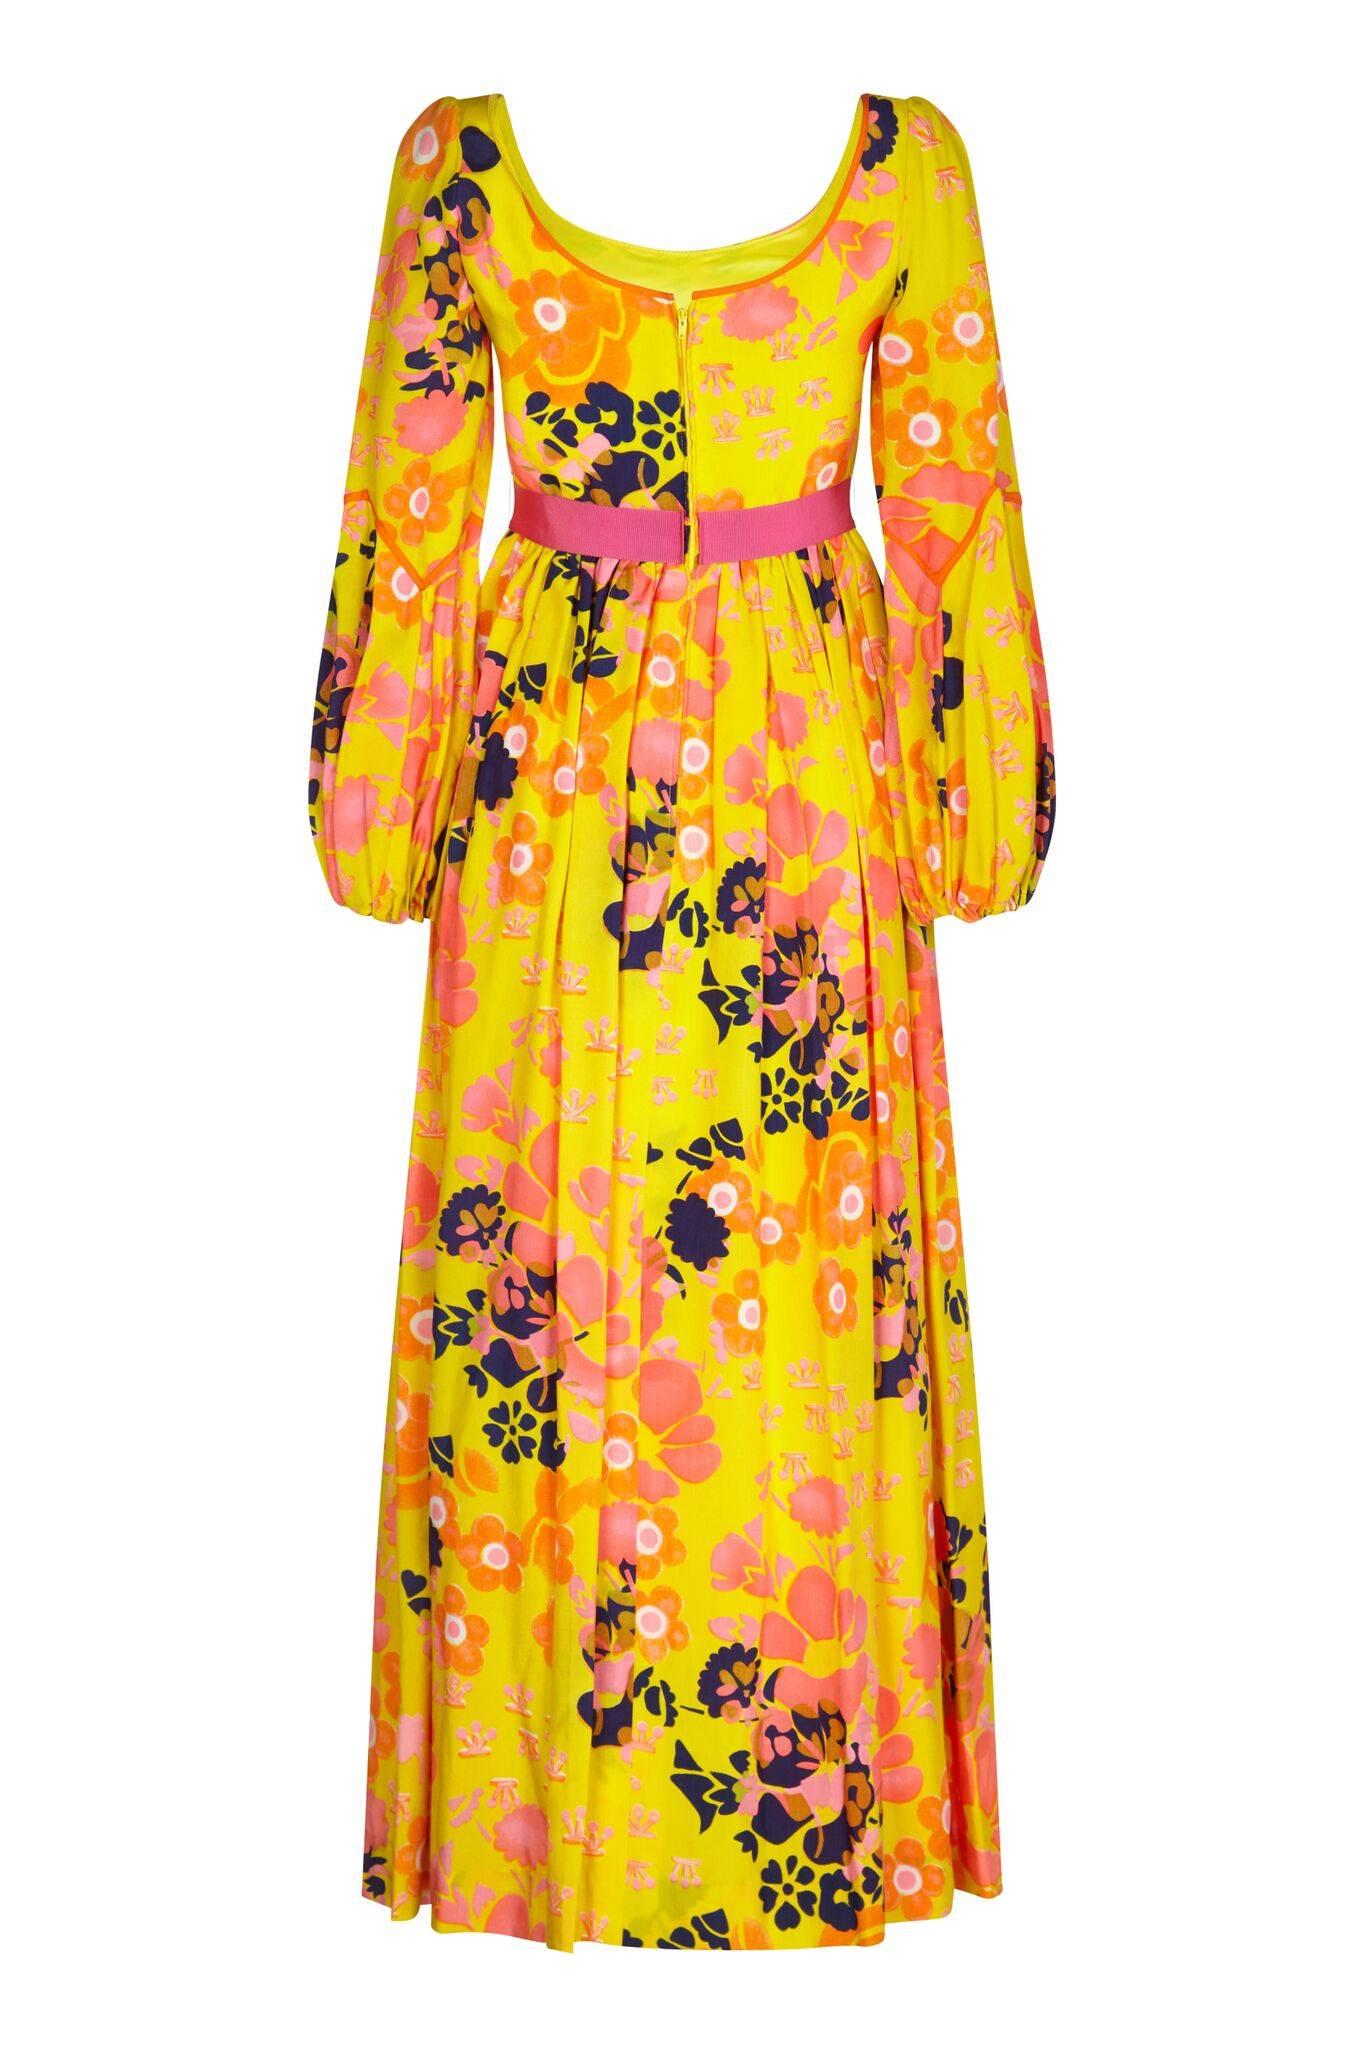 Cette robe à imprimé floral jaune psychédélique des années 1960 de Frank Usher, avec des détails en ruban rose, est une pièce magnifiquement construite. Le généreux cachet de soie est à dominante jaune soleil avec un saisissant motif floral